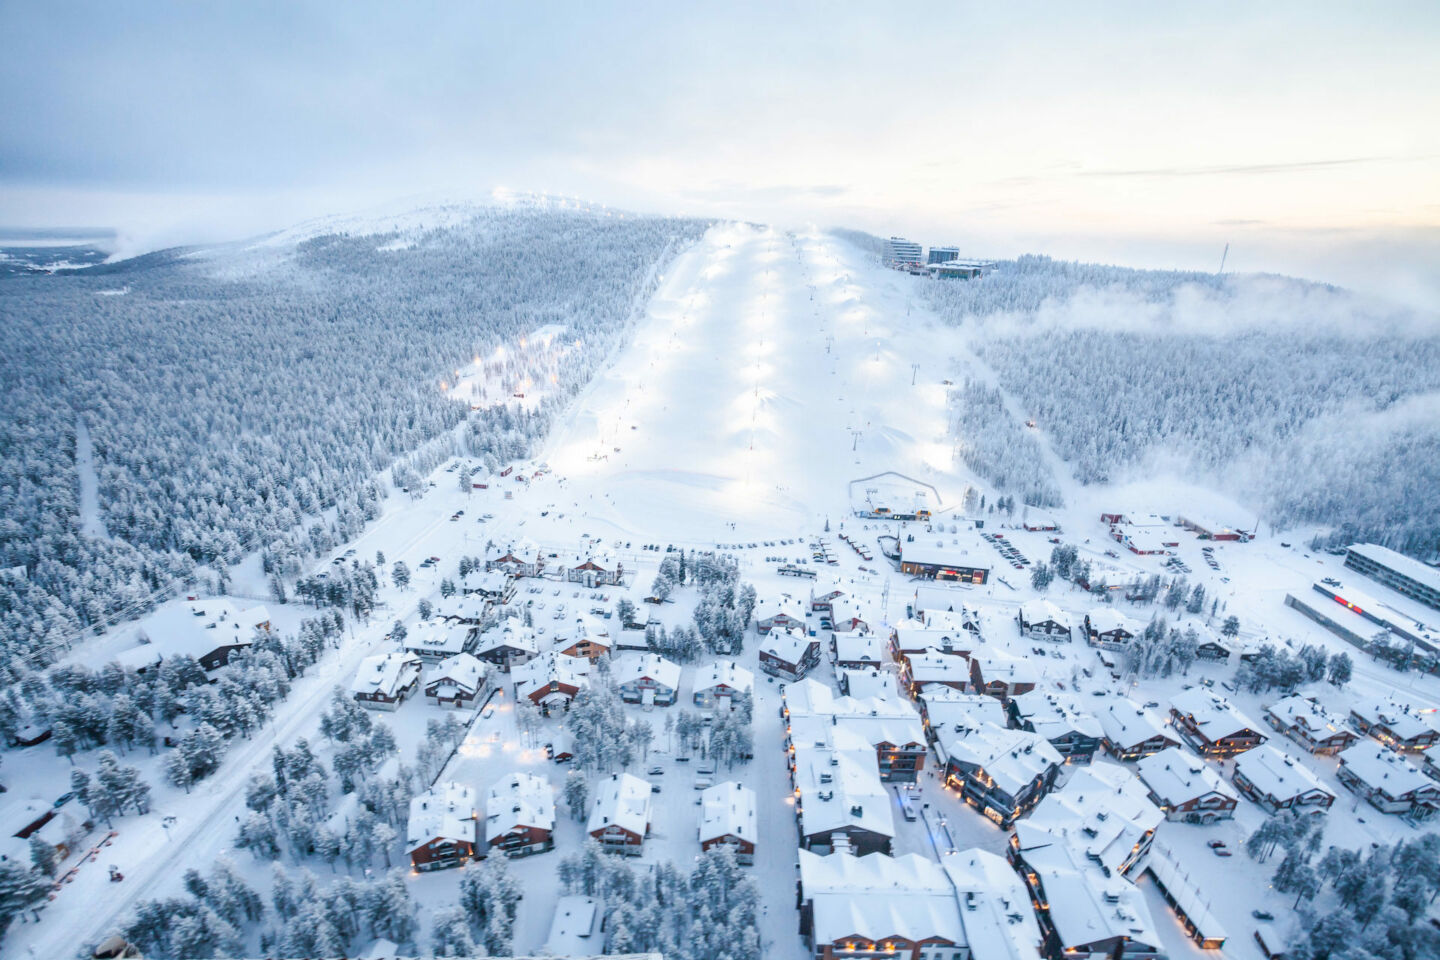 Filming location ski resort Levi in the hills of Kittilä, Finland in winter